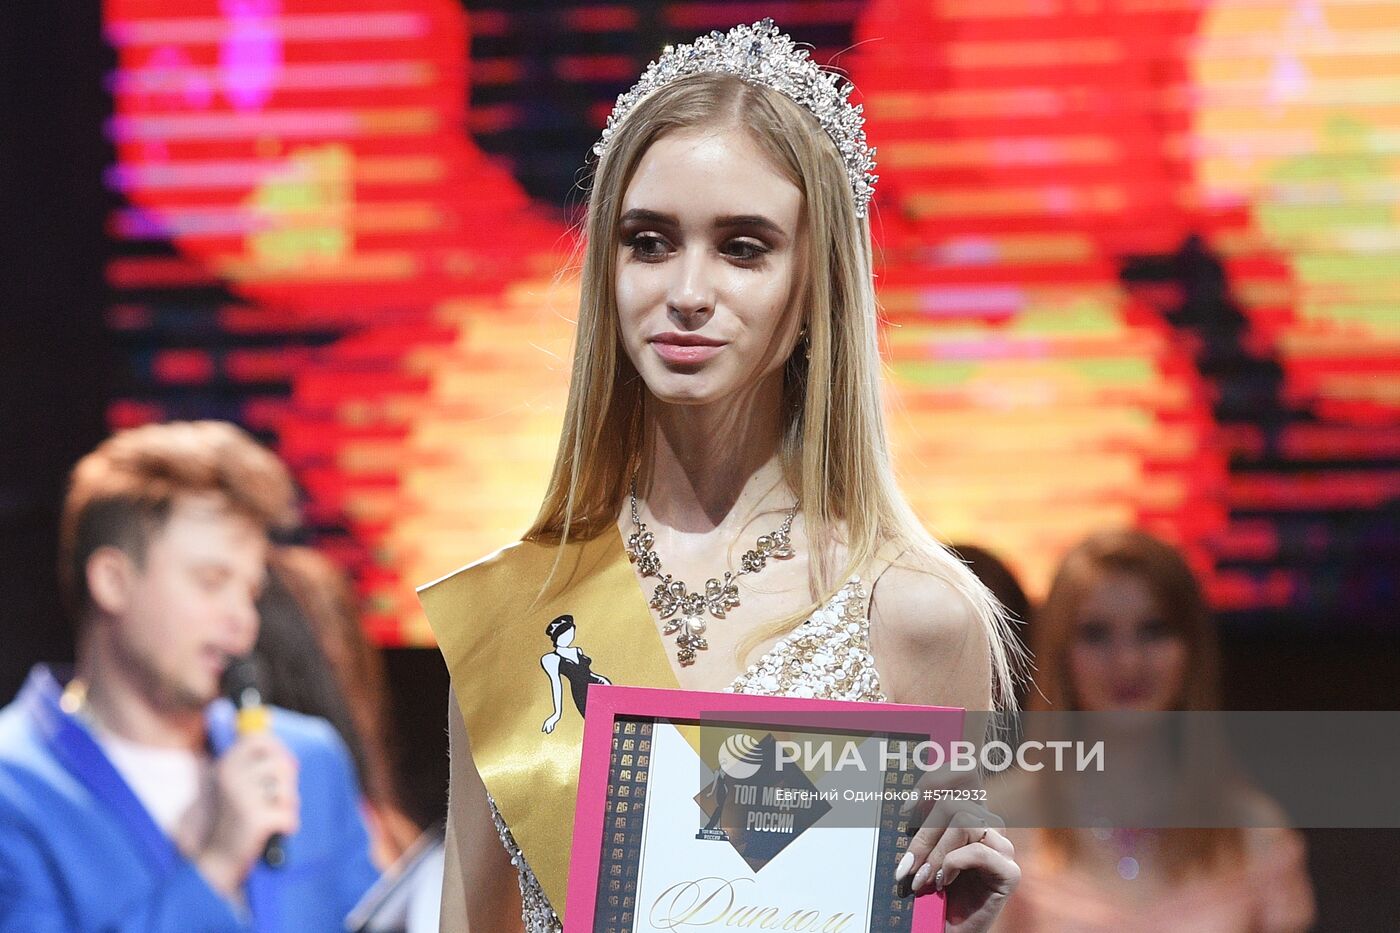 Финал всероссийского конкурса "Топ модель России 2018" и "Топ модель Plus 2018"